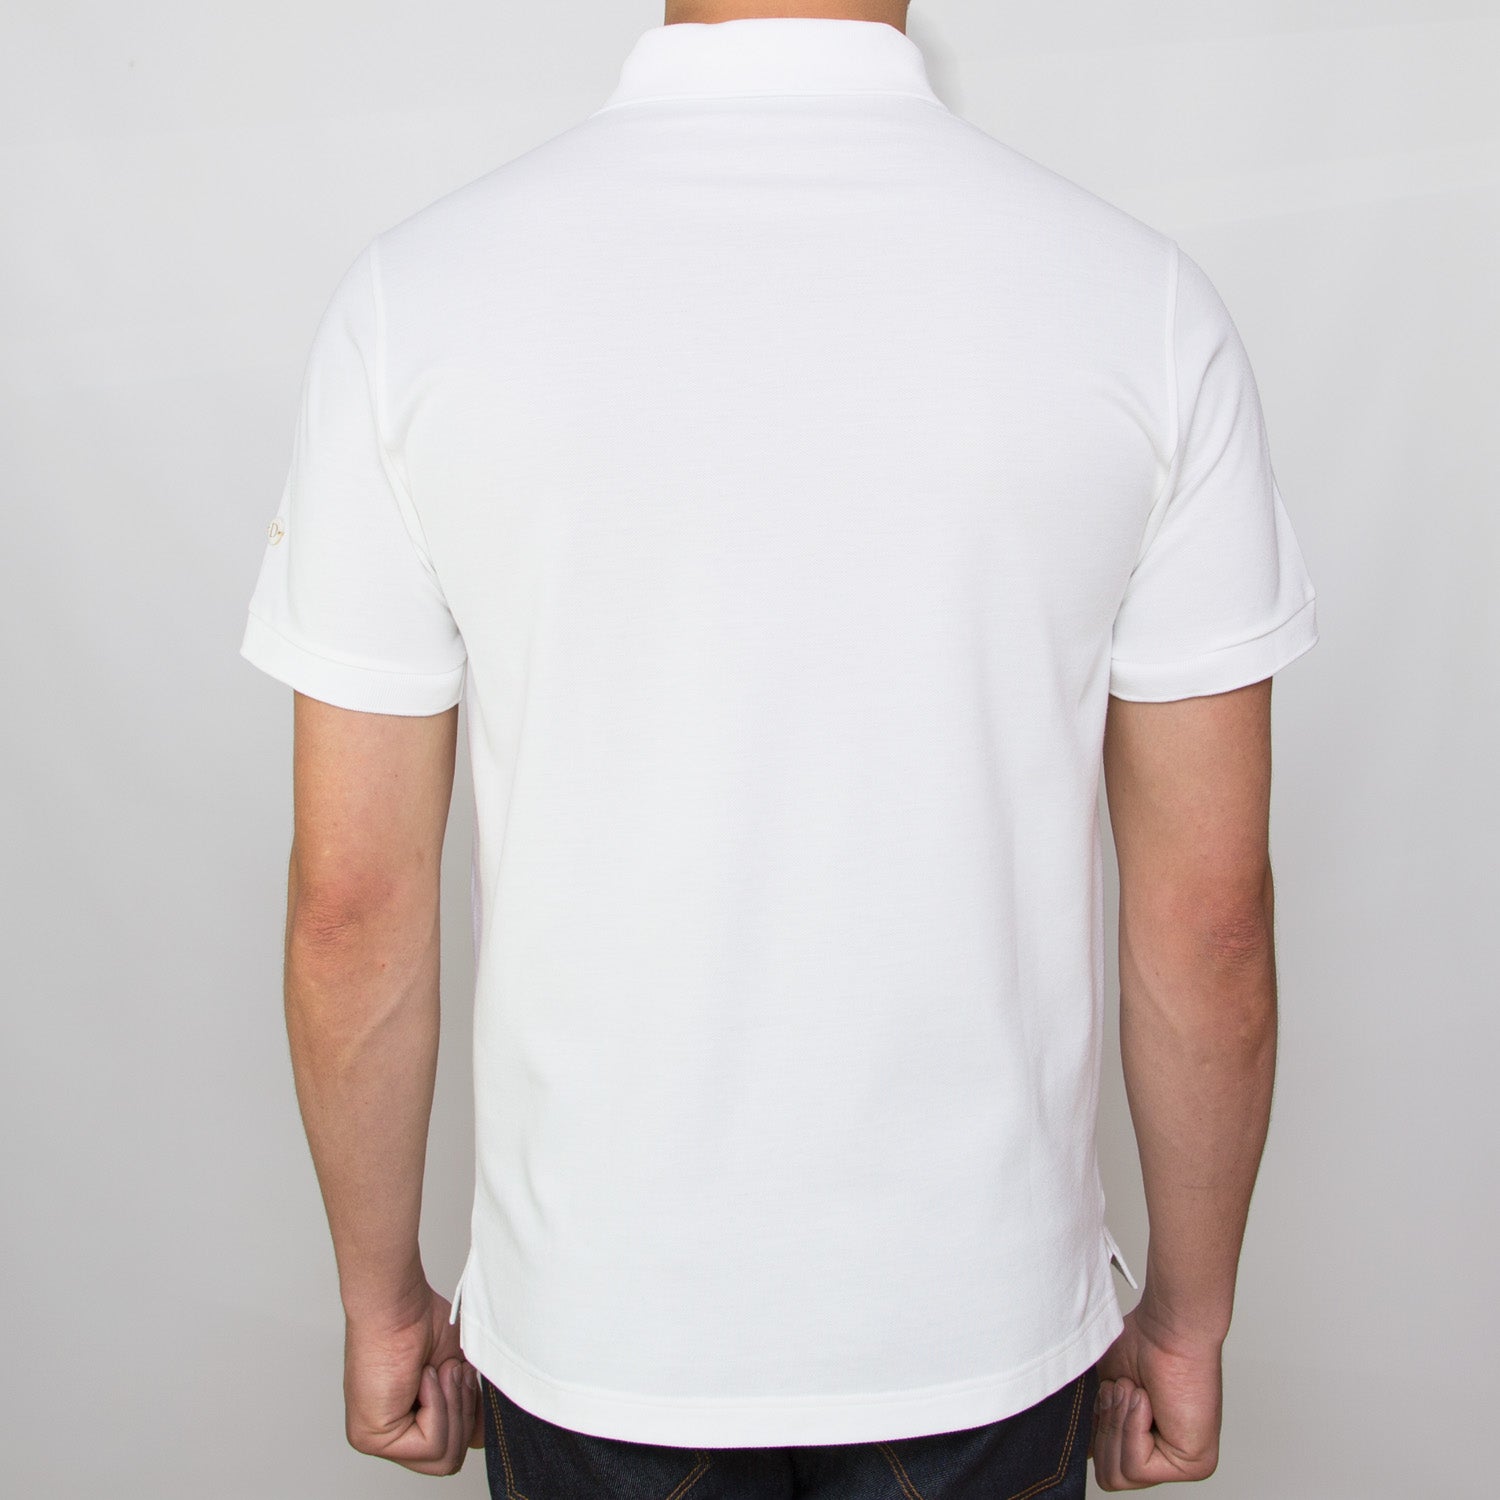 DARIO’S Couture Poloshirt Stuttgart in 100% Baumwollpiqué in White